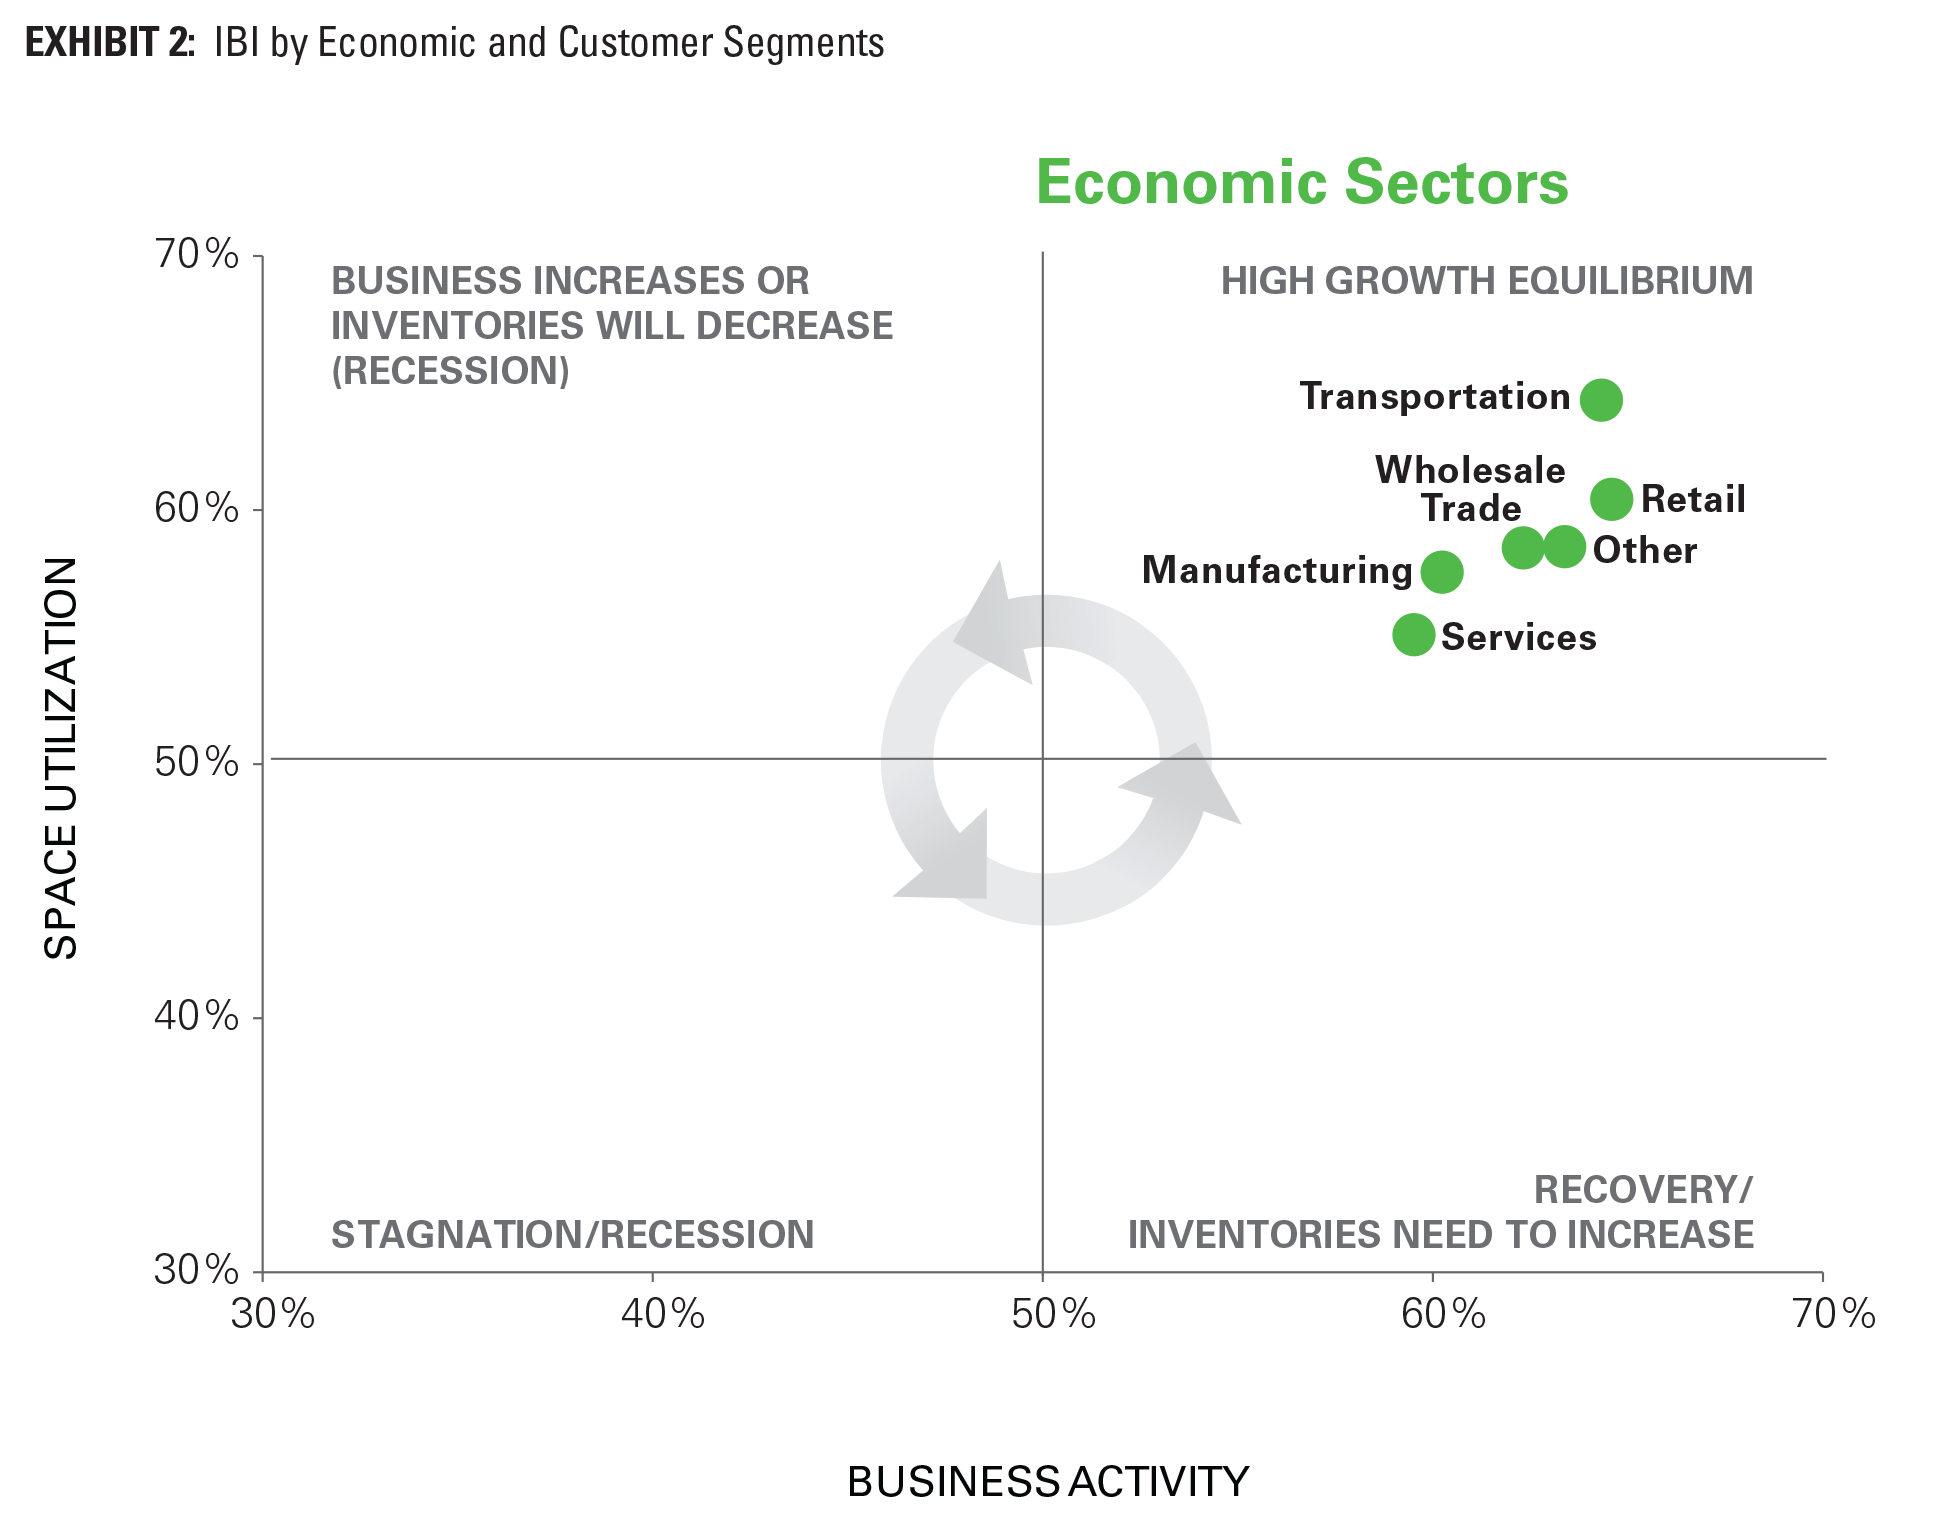 EXHIBIT 2: IBI by Economic and Customer Segments